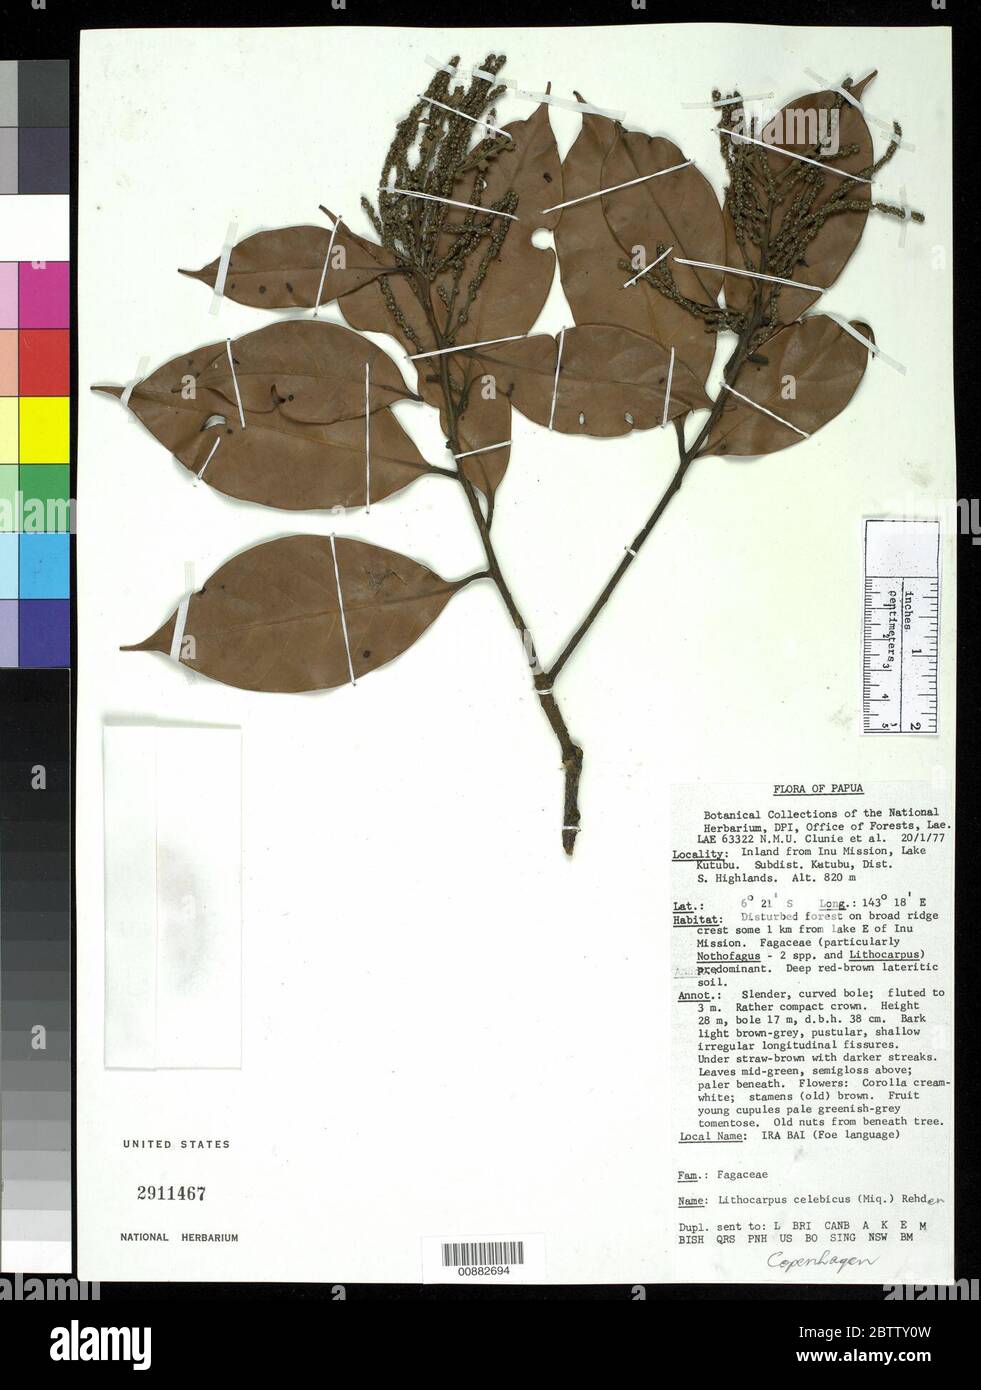 Lithocarpus celebicus Miq Rehder. Stock Photo